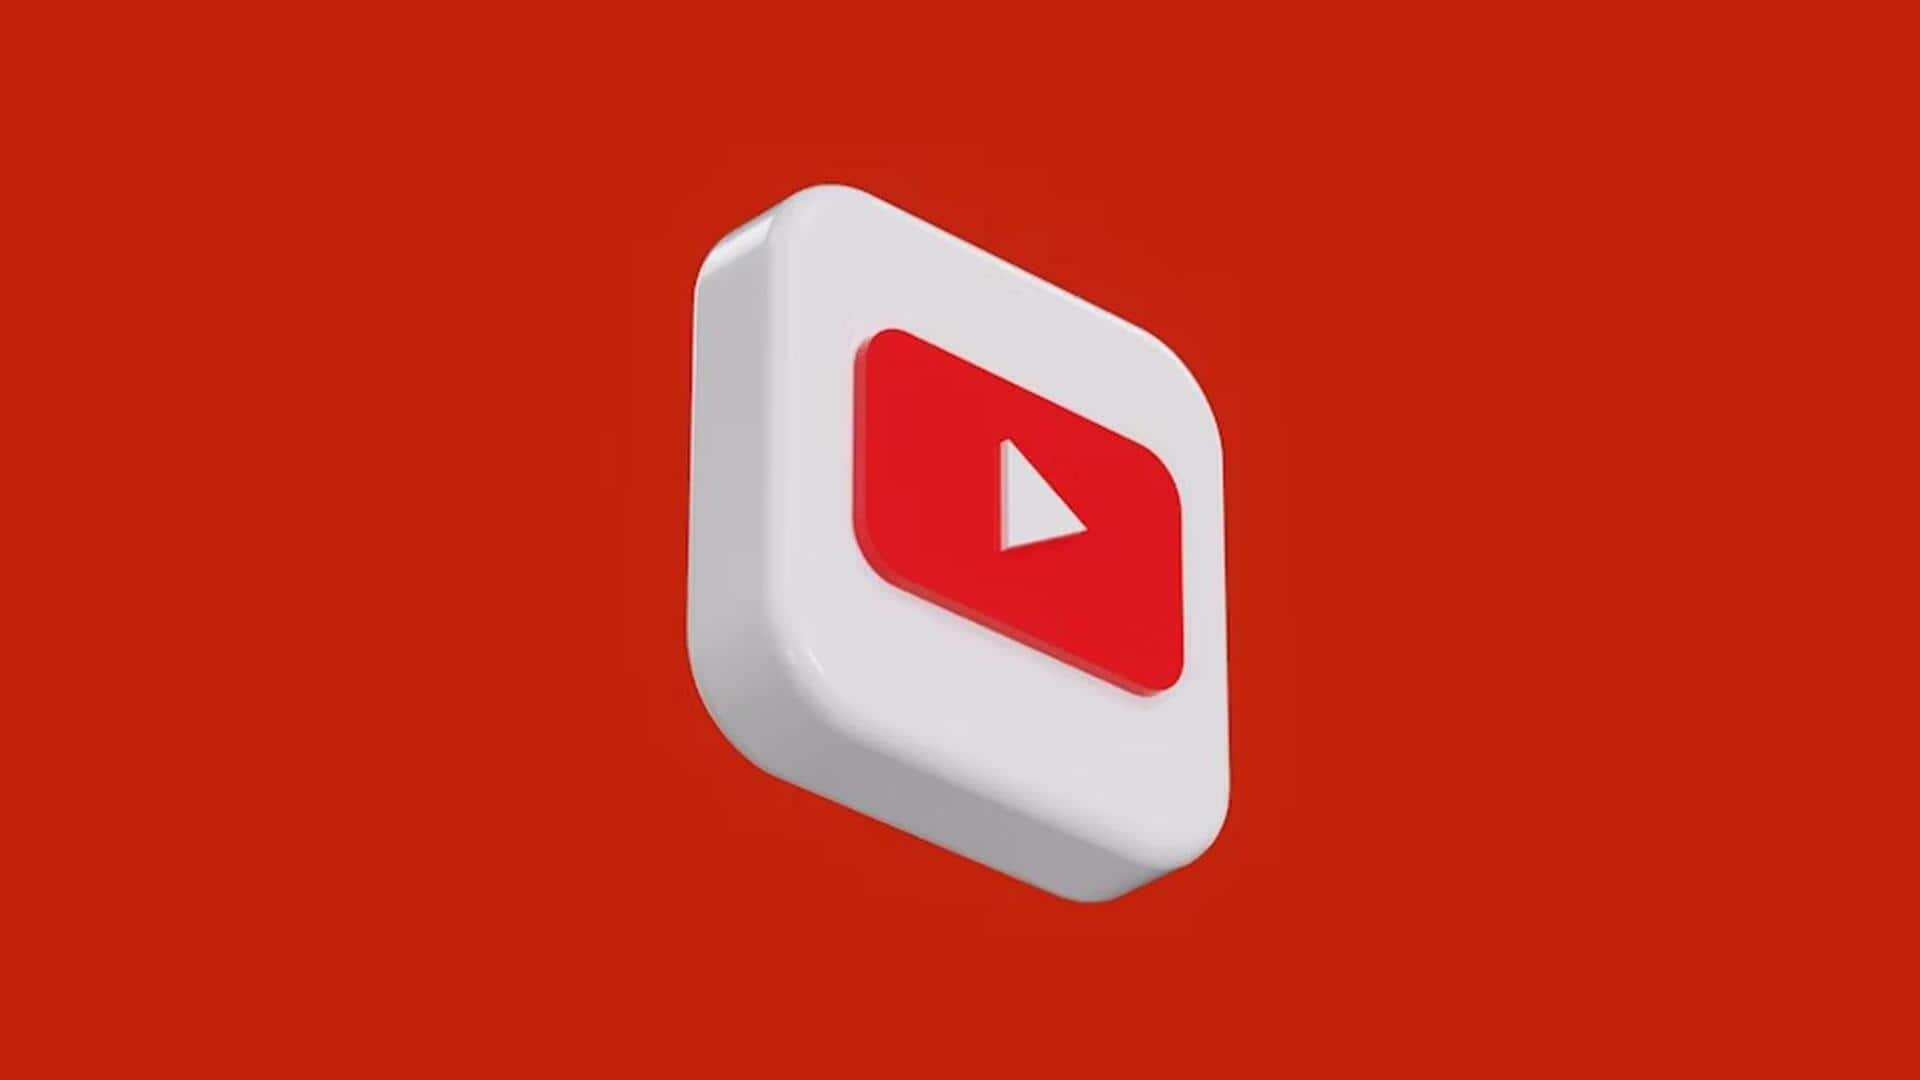 यूट्यूब ने अपनी नीतियों में किया बदलाव, बंदूक वाले वीडियो पर लगाए गए नए प्रतिबंध